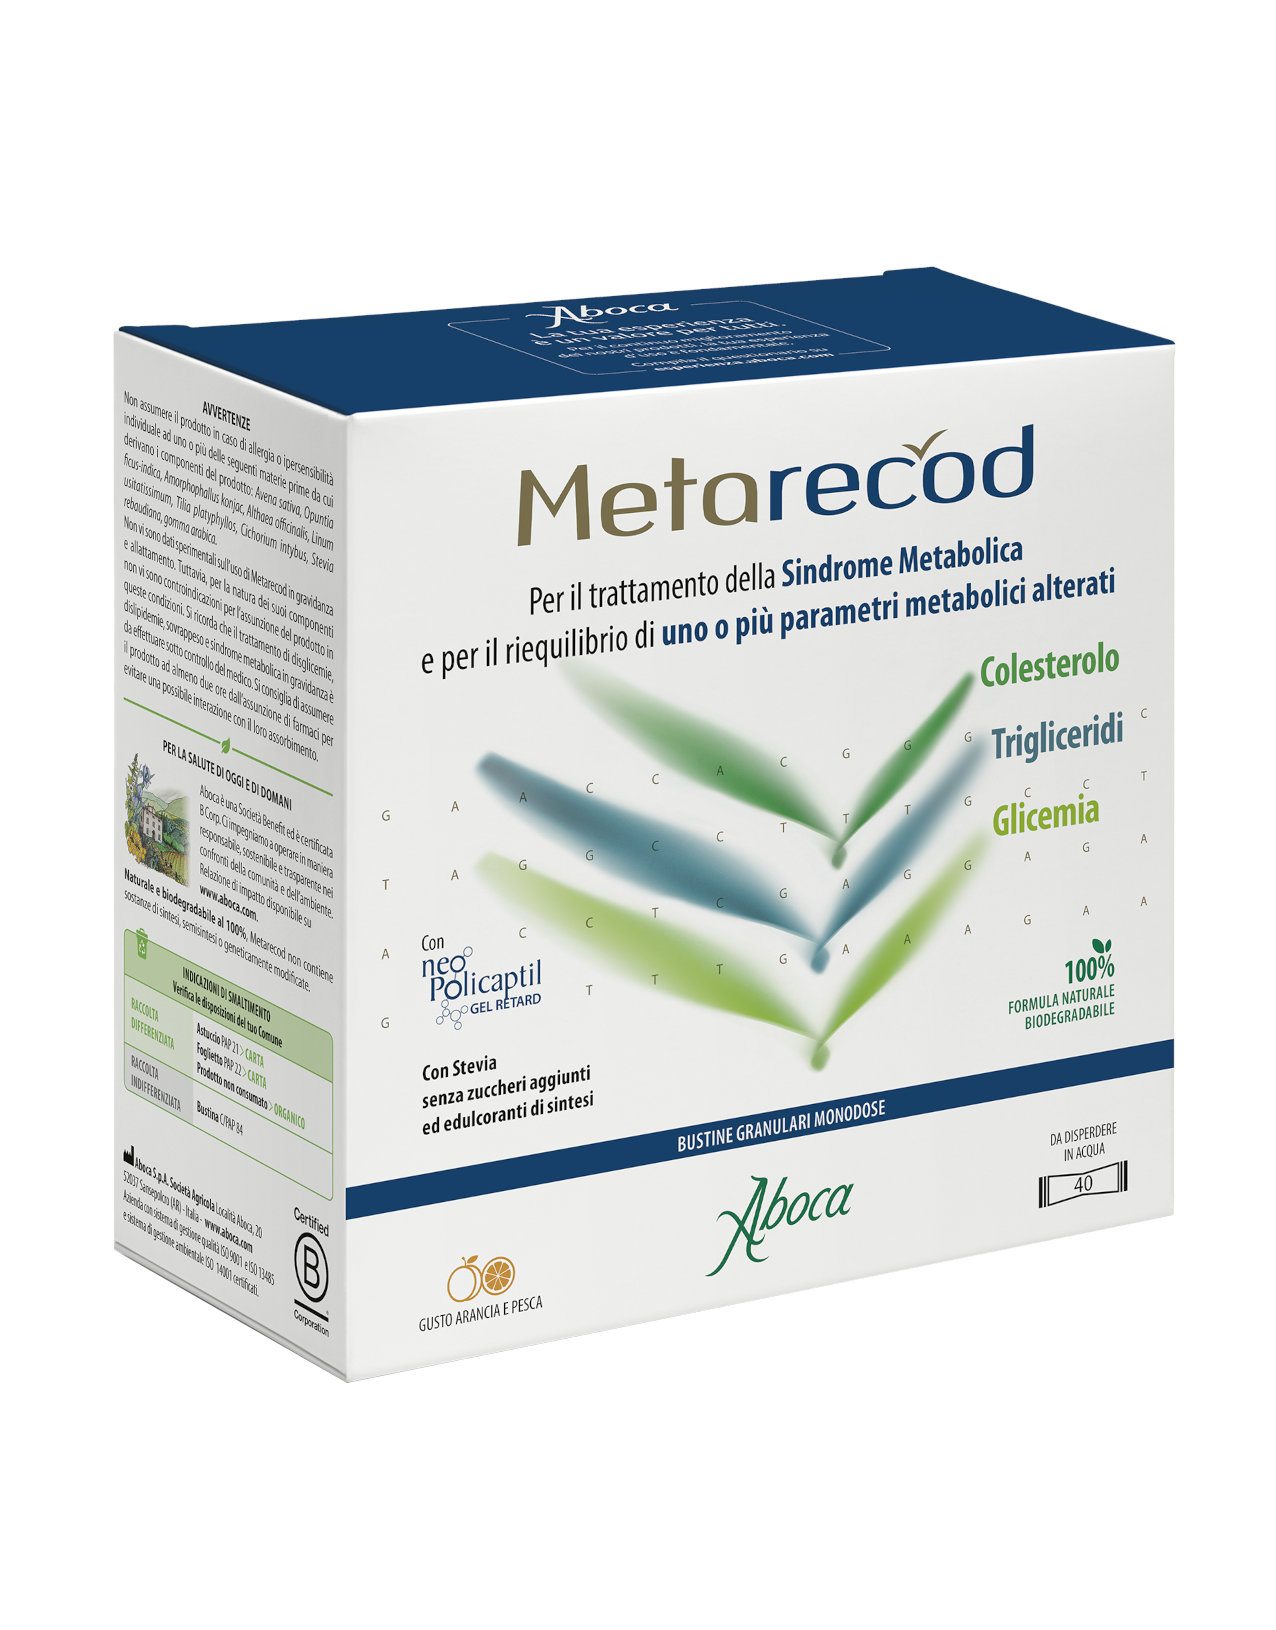 Metarecod d'Aboca est un dispositif médical indiqué dans le